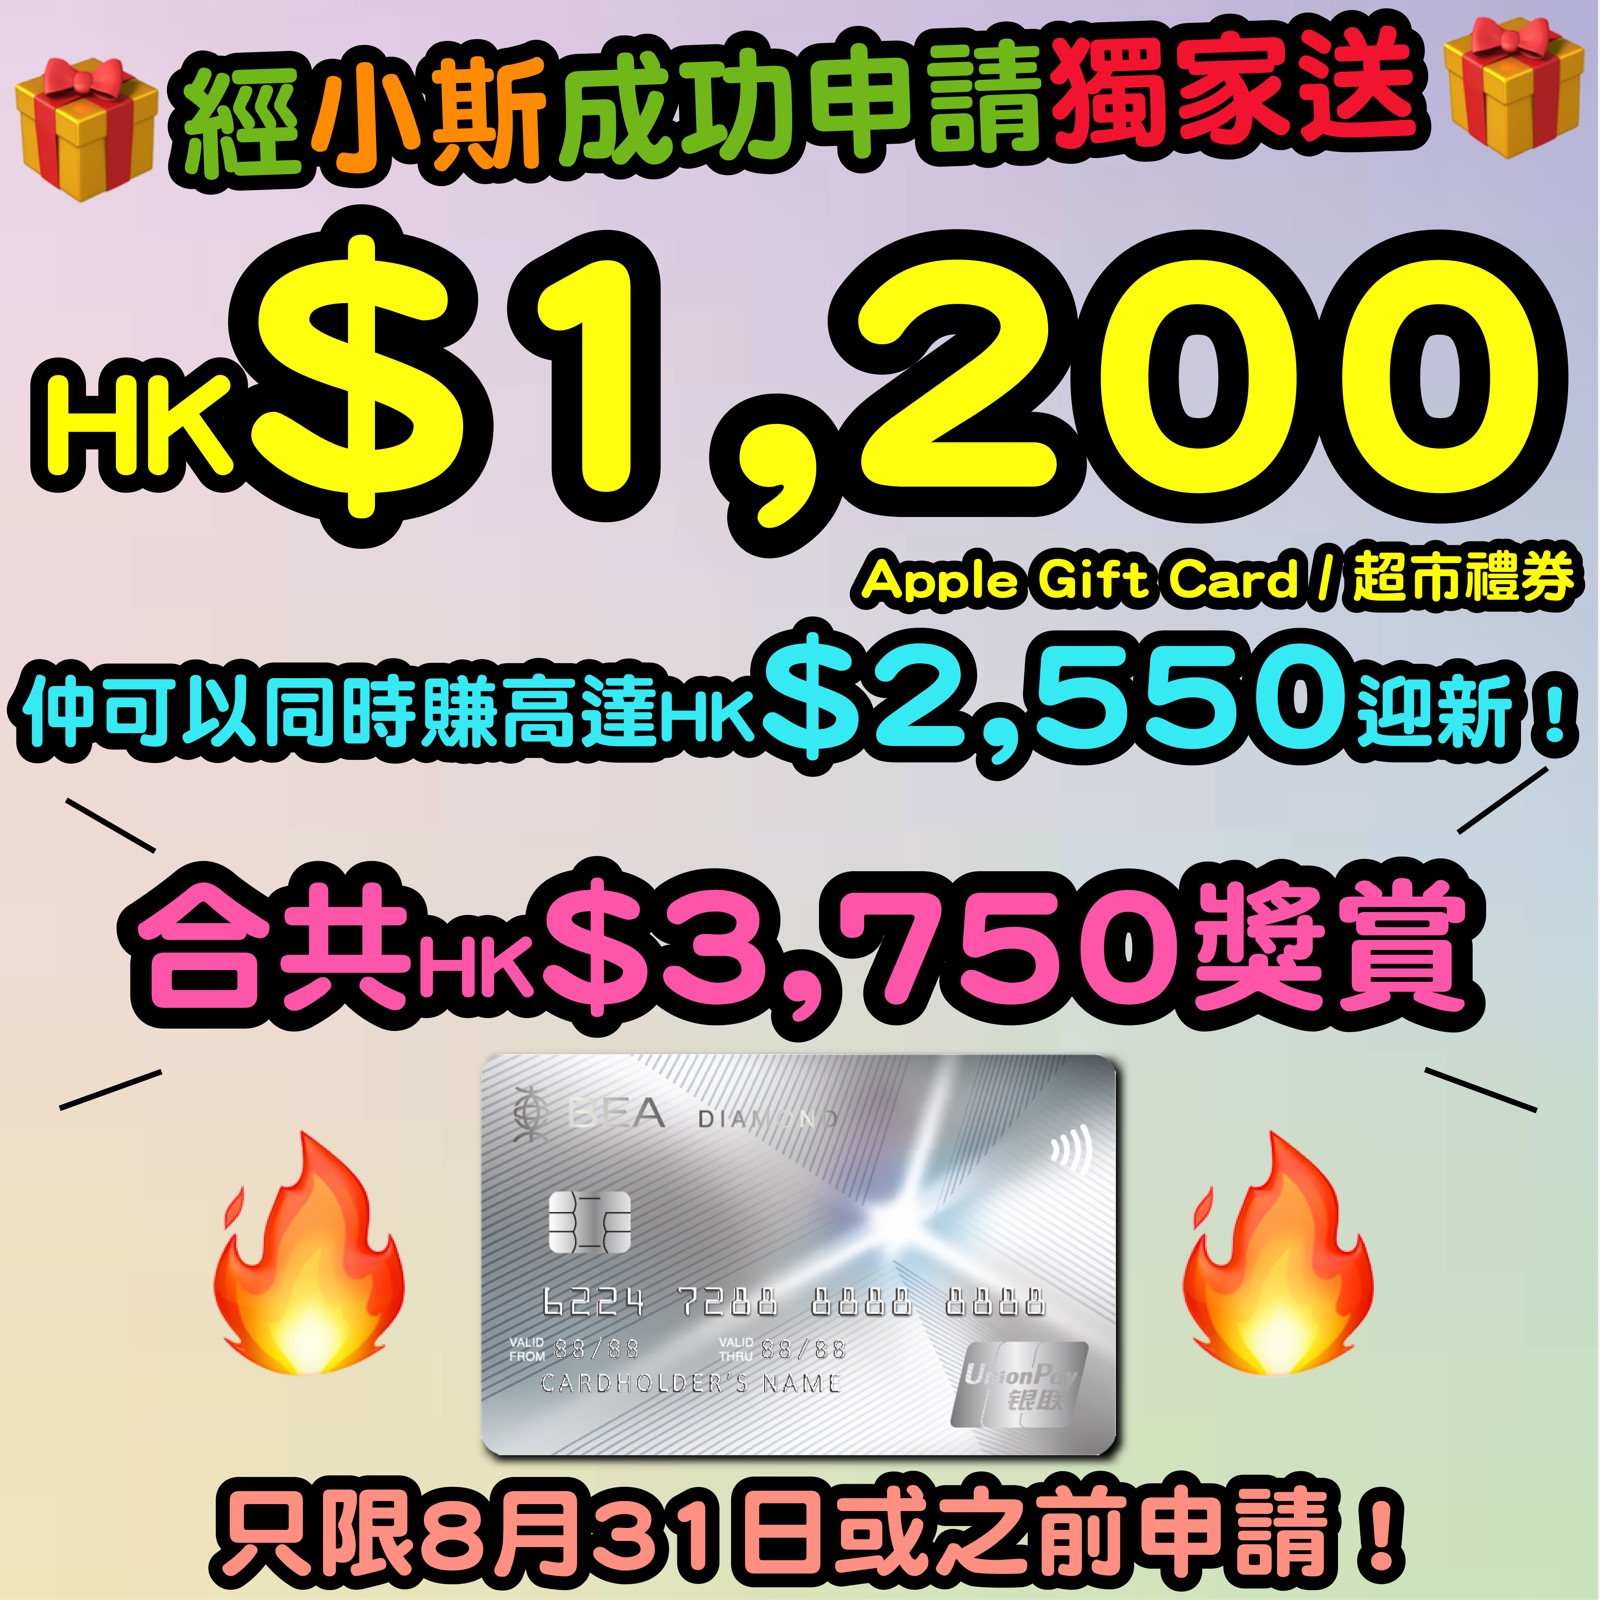 【🔥🔥東亞銀行銀聯雙幣鑽石信用卡小斯優惠😍😍】8月31日或之前，新客戶經小斯申請有獨家HK$1,200 Apple Gift Card 或 超市禮券！仲可以同時賺高達HK$2,550迎新！合共HK$3,750獎賞！